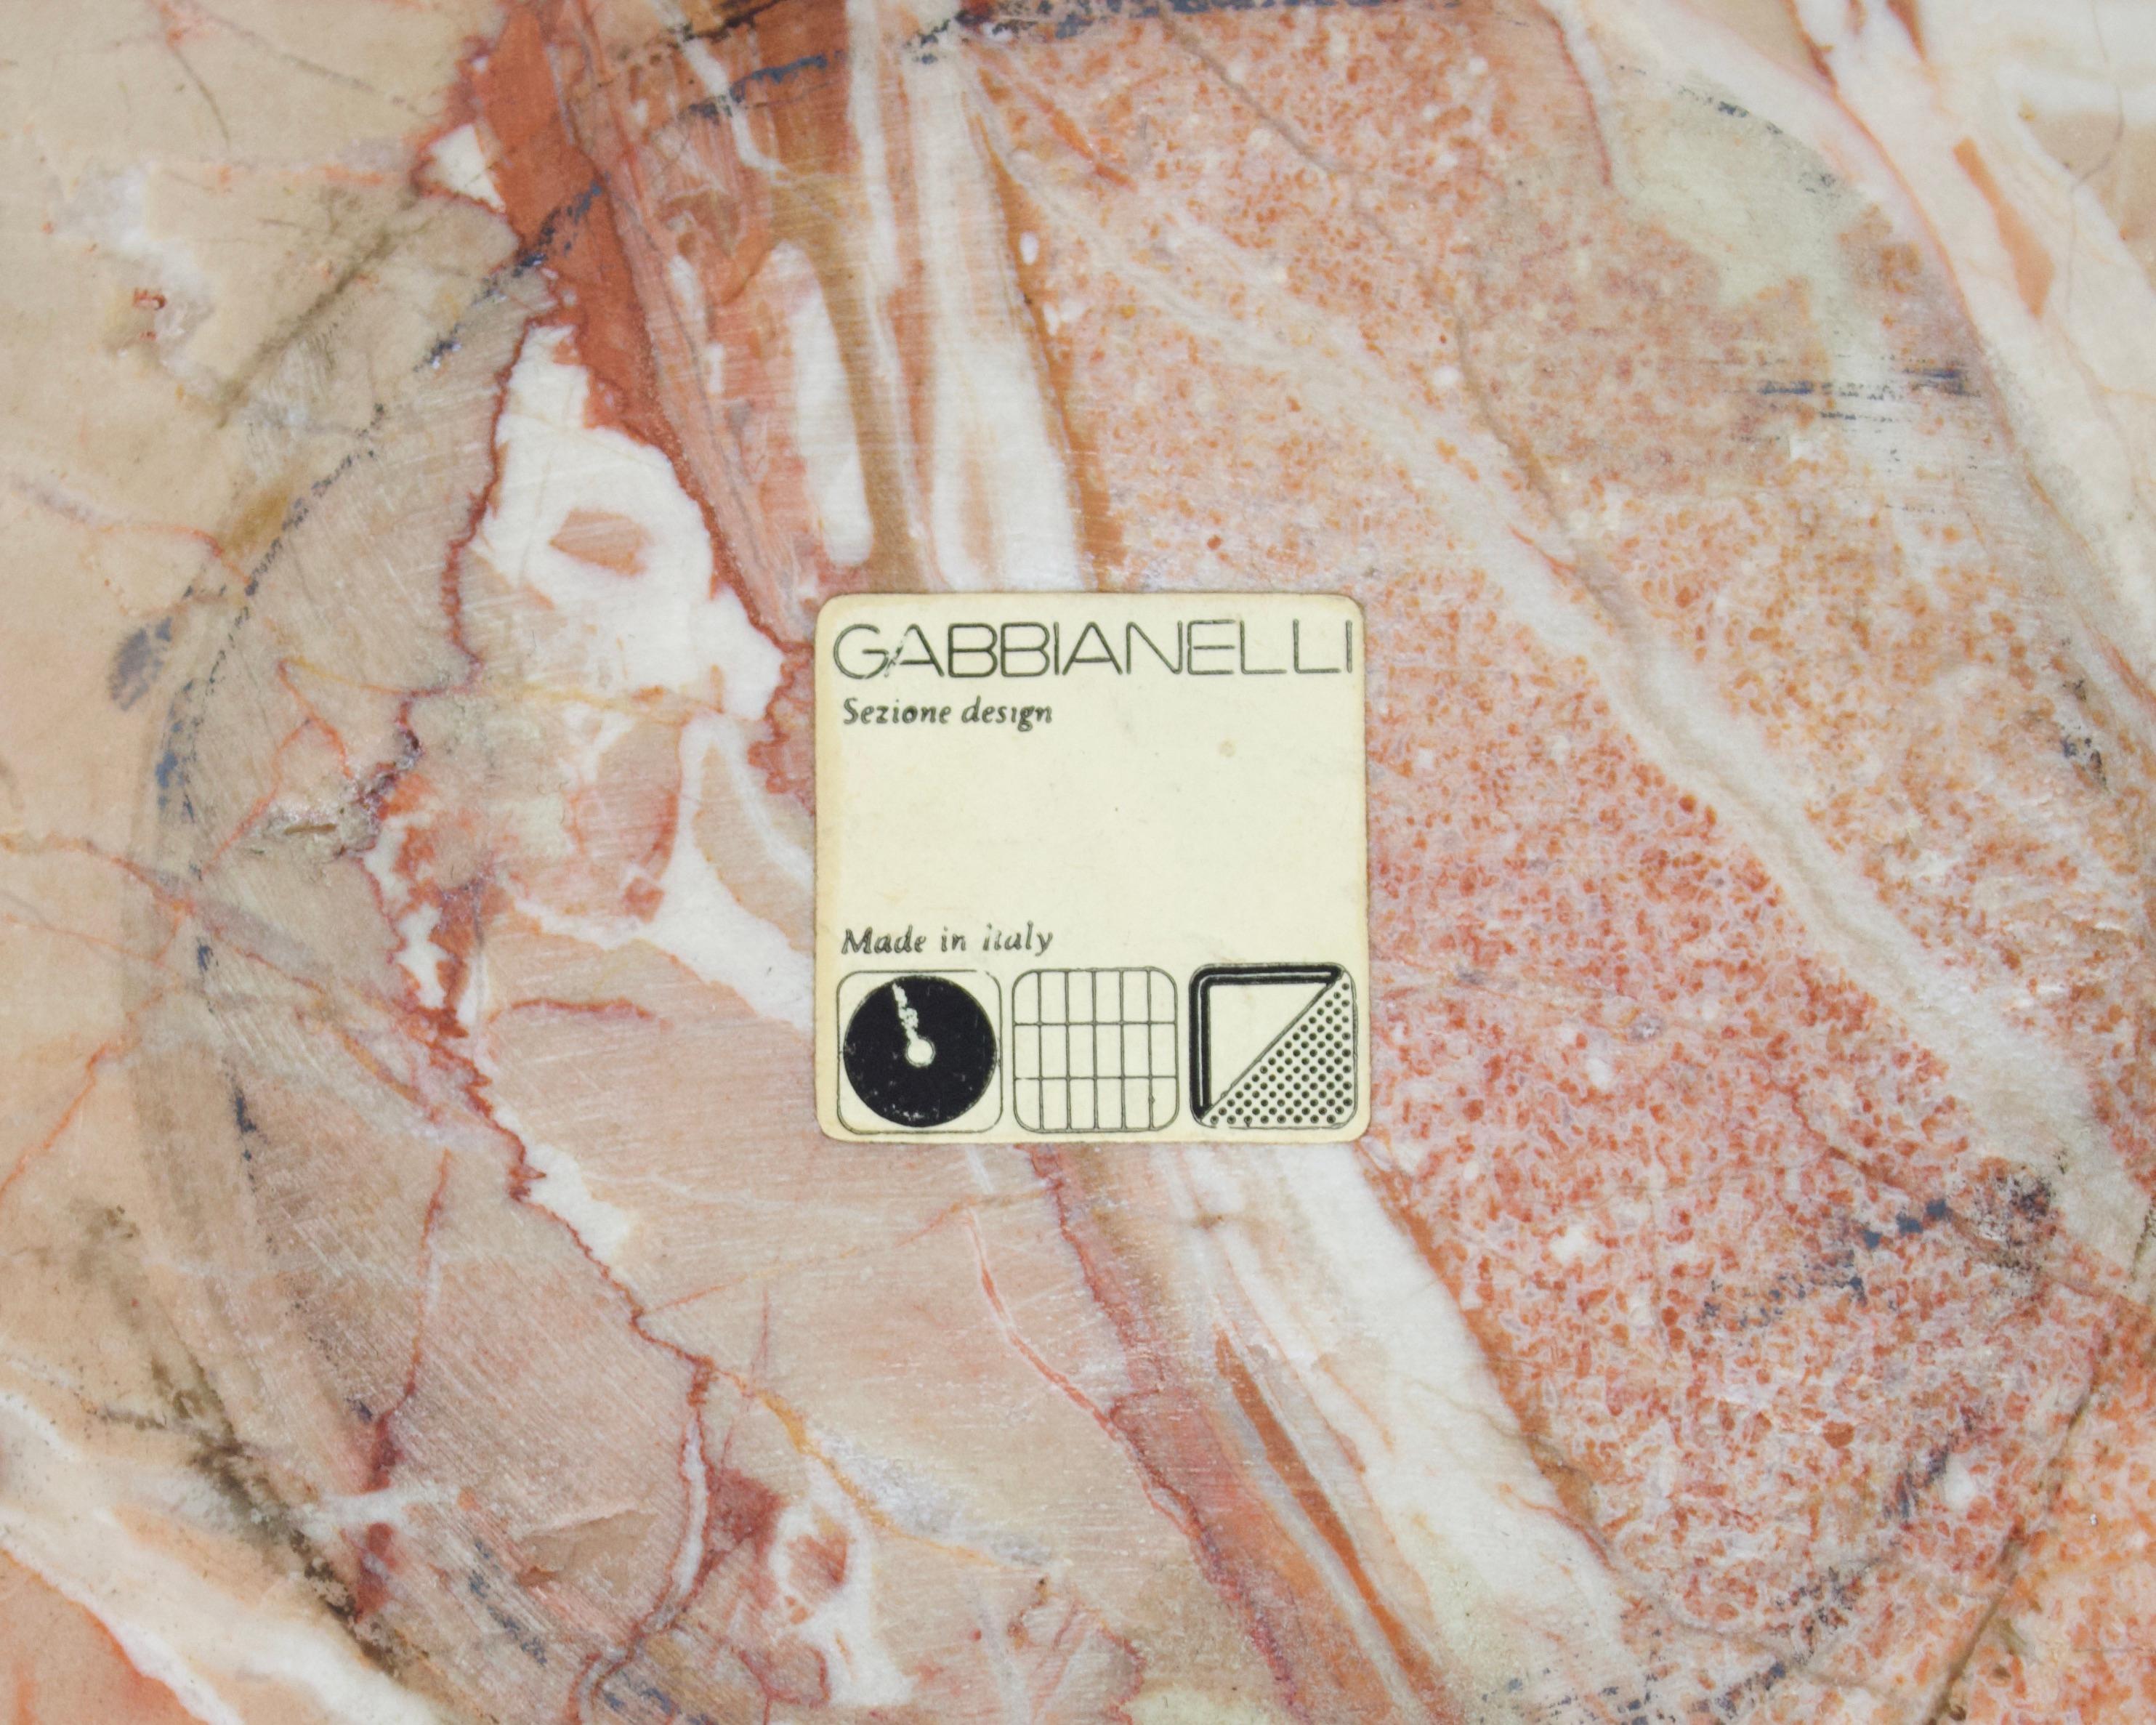 Roberto Arioli for Gabbianelli Dish Centerpiece Pale Peach Italian Marble 9